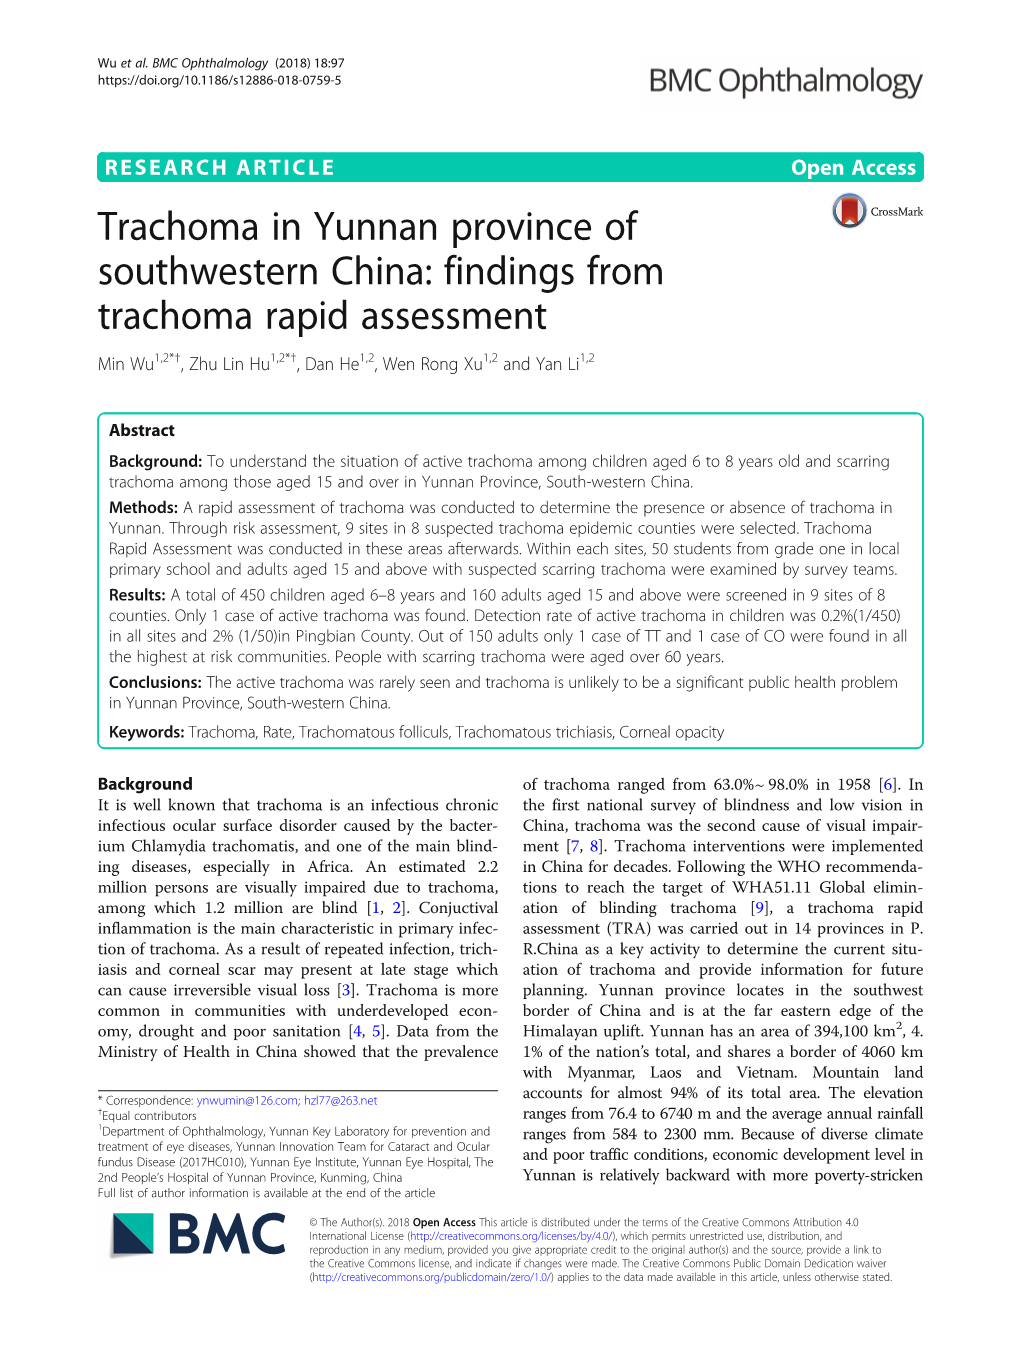 Trachoma in Yunnan Province of Southwestern China: Findings from Trachoma Rapid Assessment Min Wu1,2*†, Zhu Lin Hu1,2*†, Dan He1,2, Wen Rong Xu1,2 and Yan Li1,2